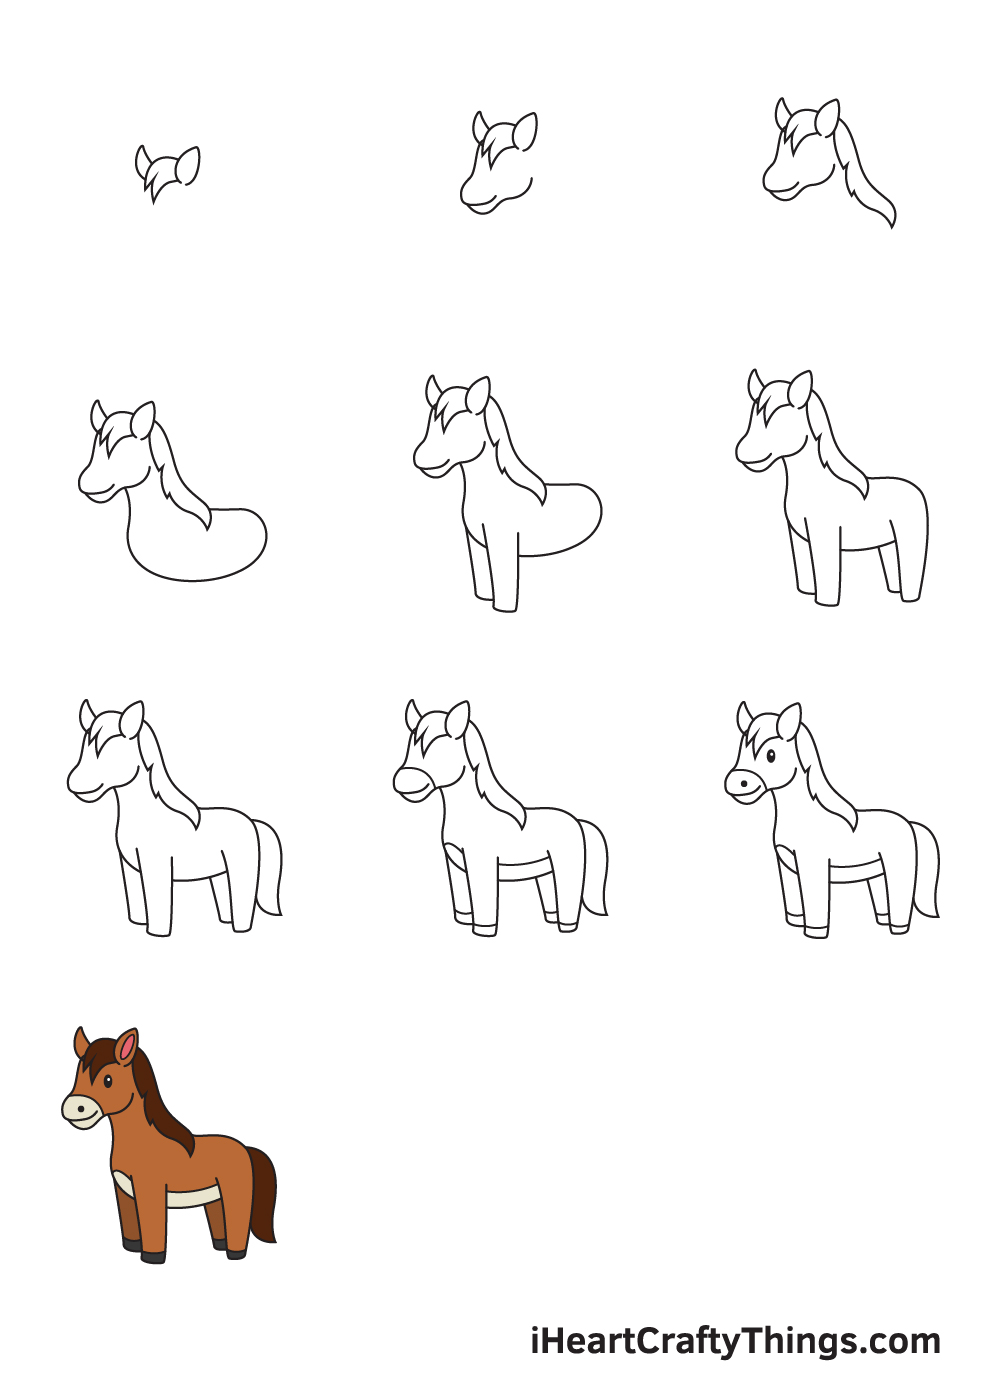 Drawing Horse in 10 Easy Steps - Hướng dẫn cách vẽ con ngựa đơn giản với 9 bước cơ bản